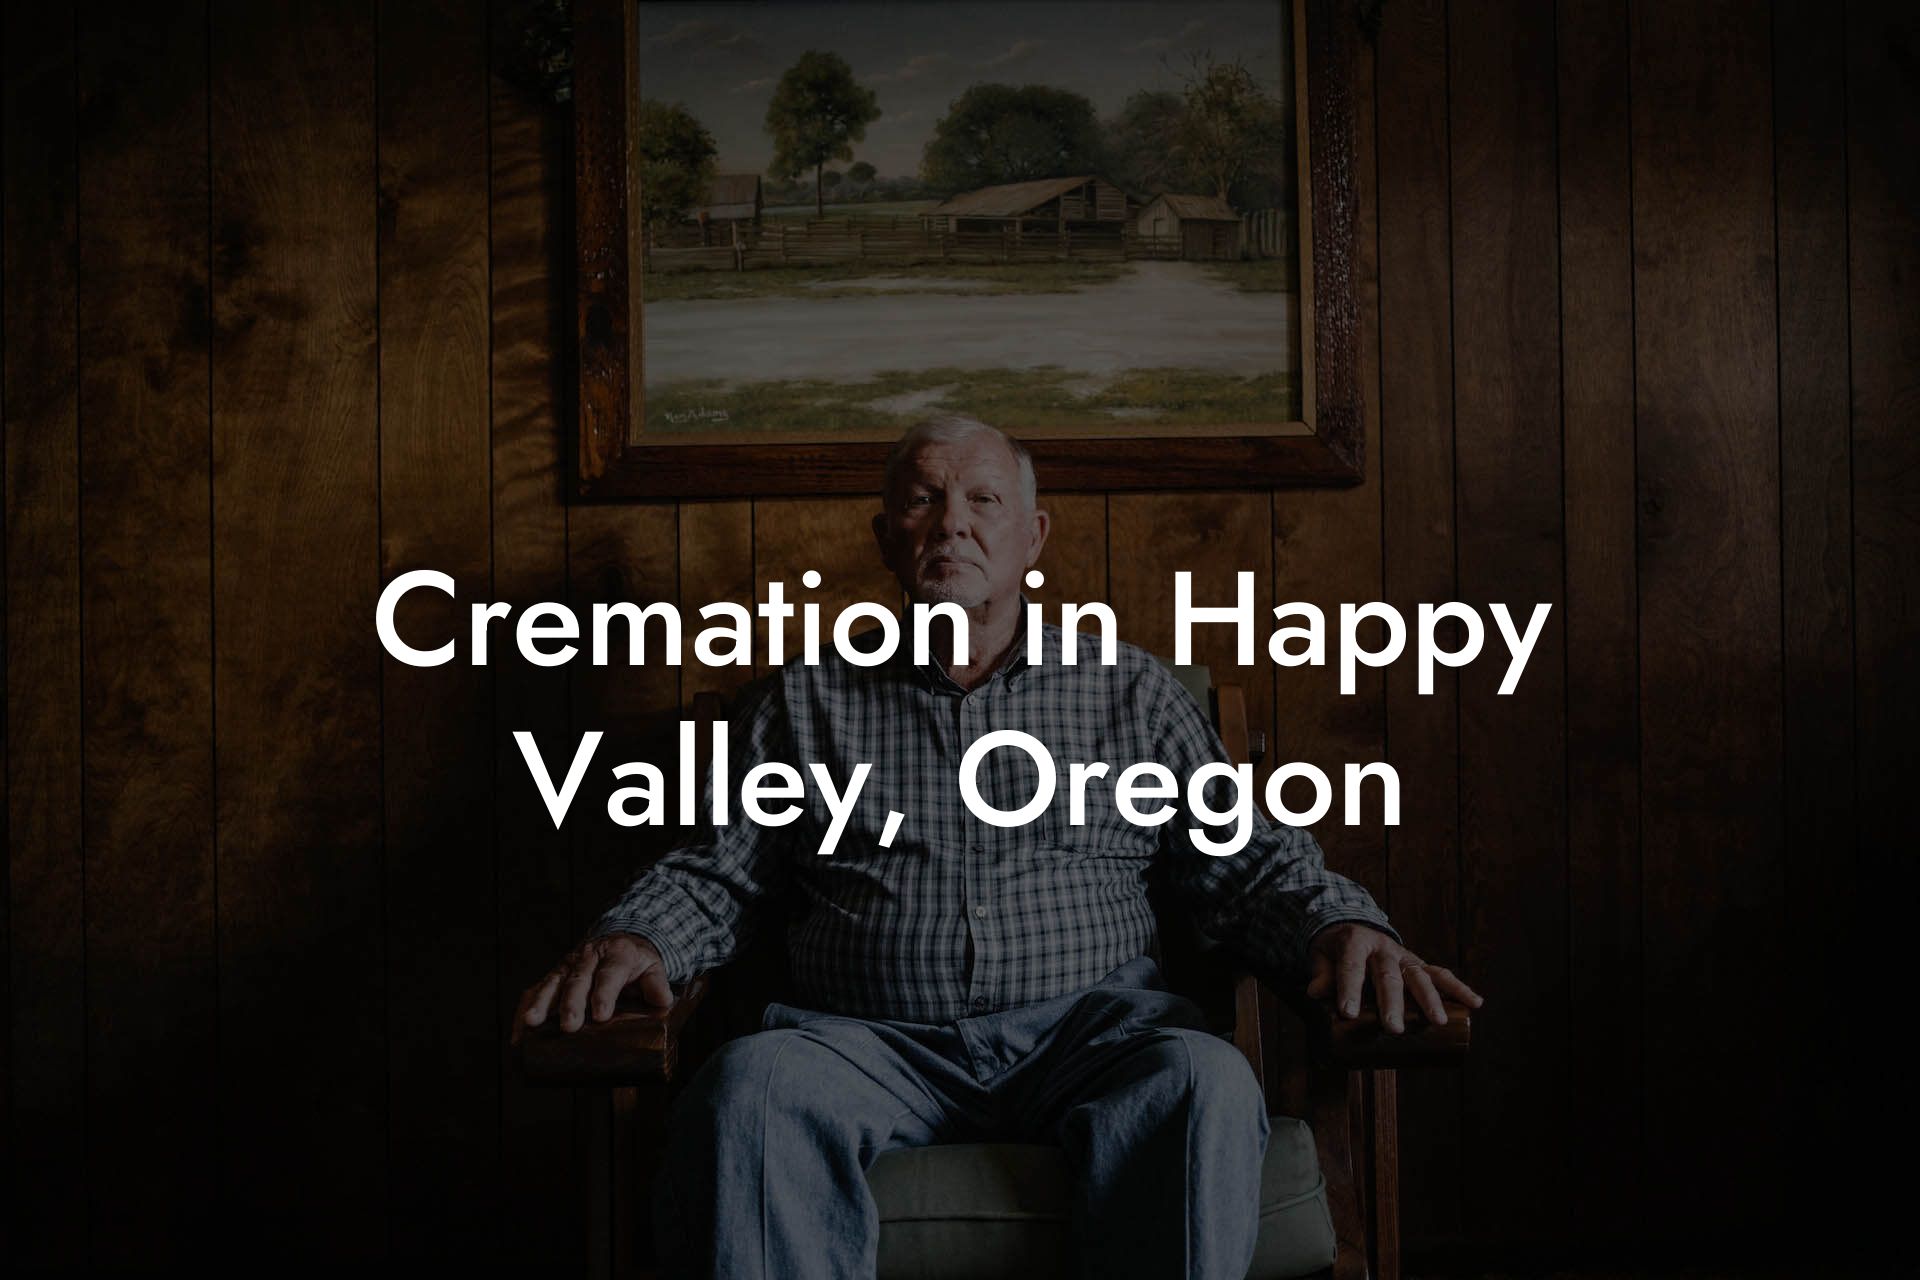 Cremation in Happy Valley, Oregon